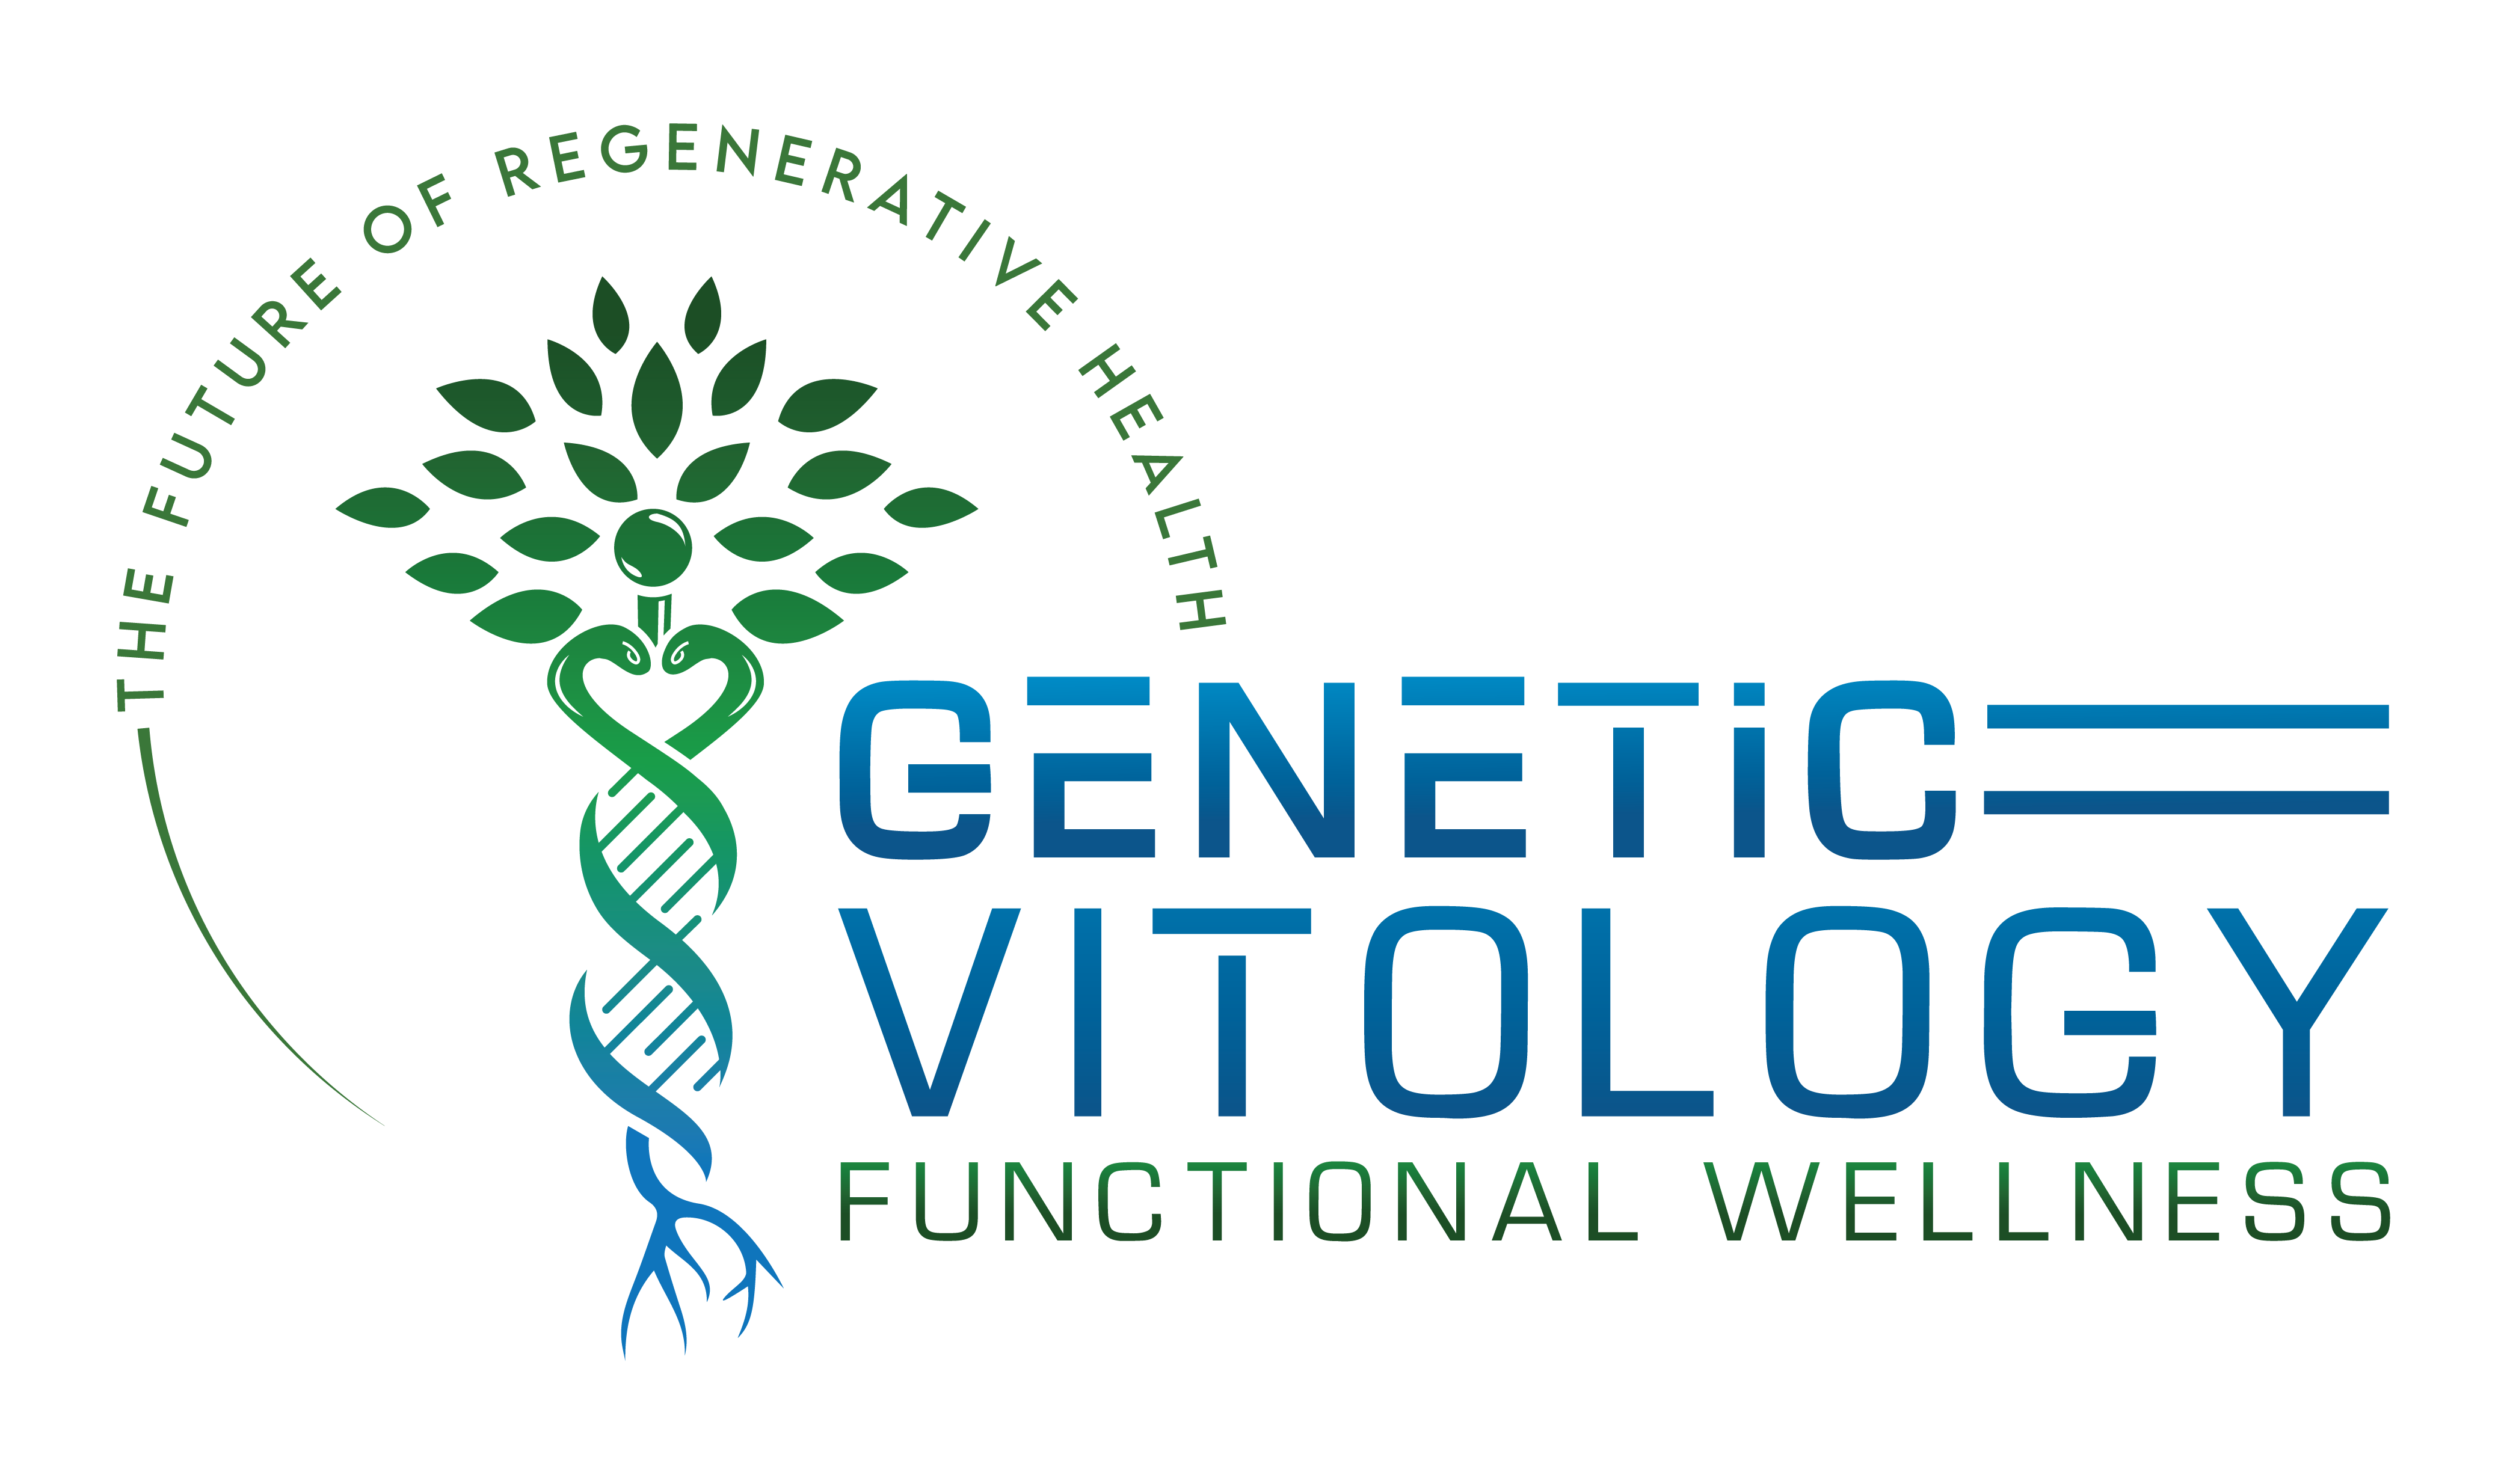 Genetic Vitology